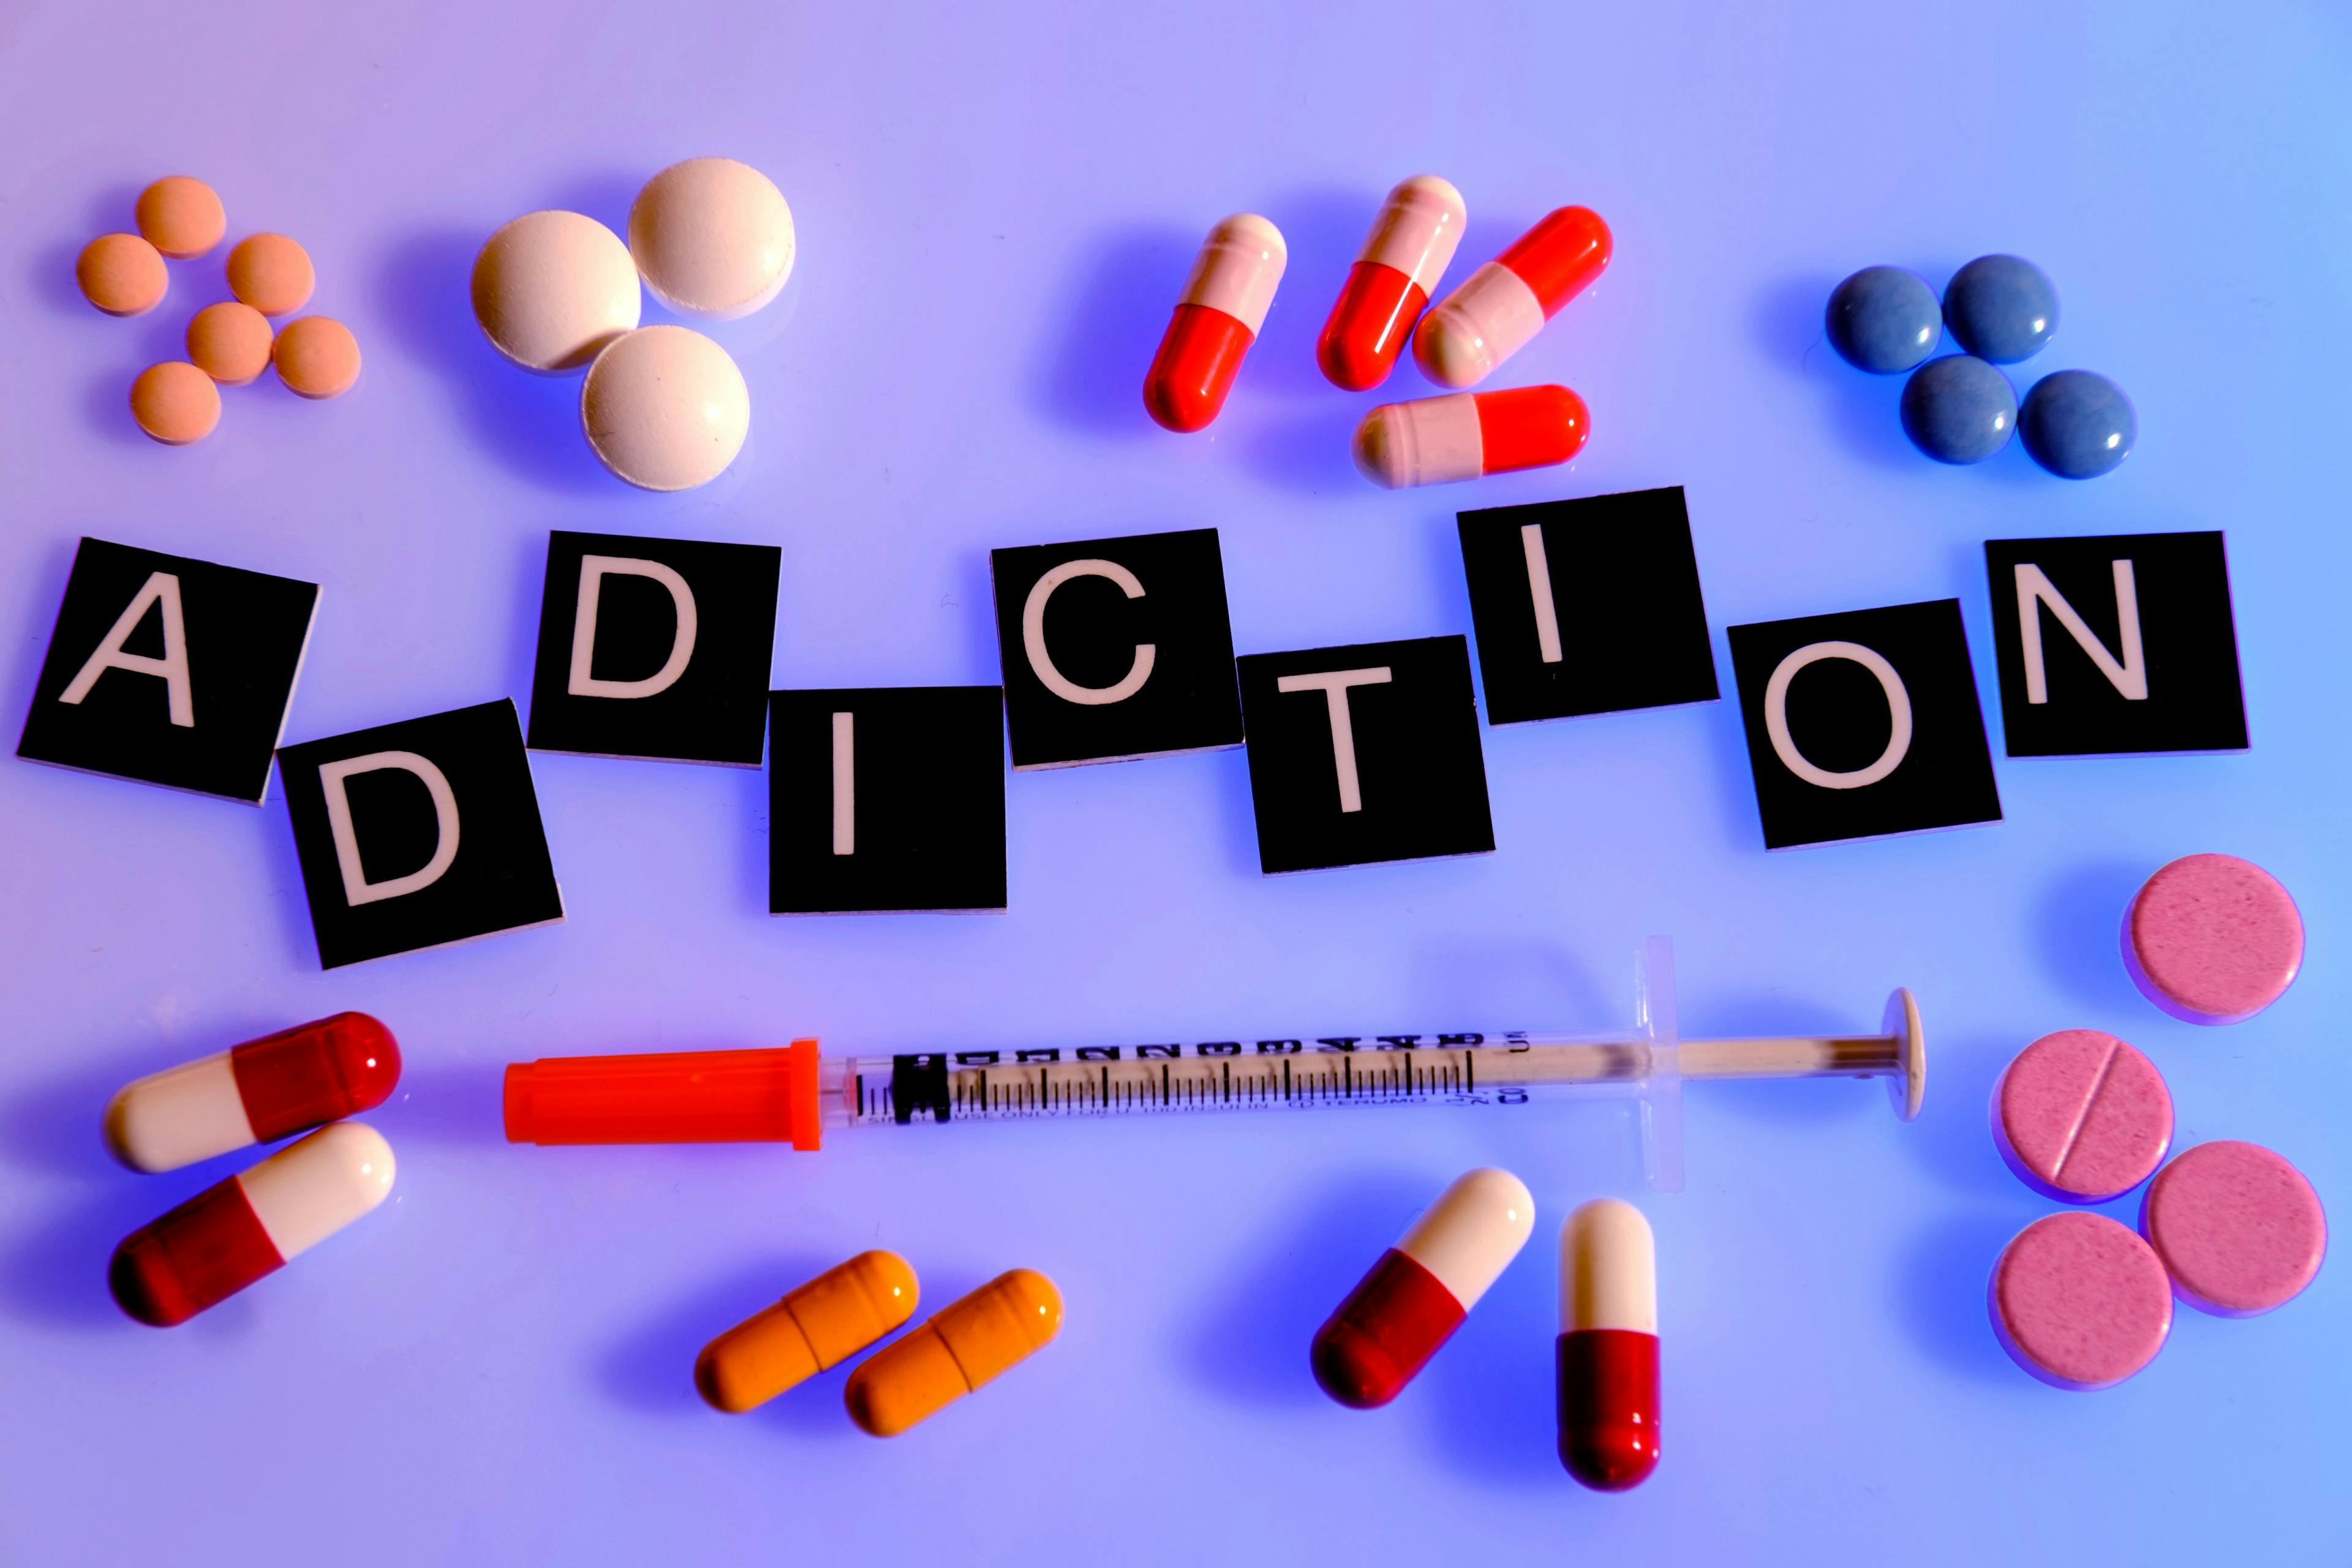 Word "addiction" surrounded by medication, syringe | Image Credit: Belinda Pretorius - stock.adobe.com